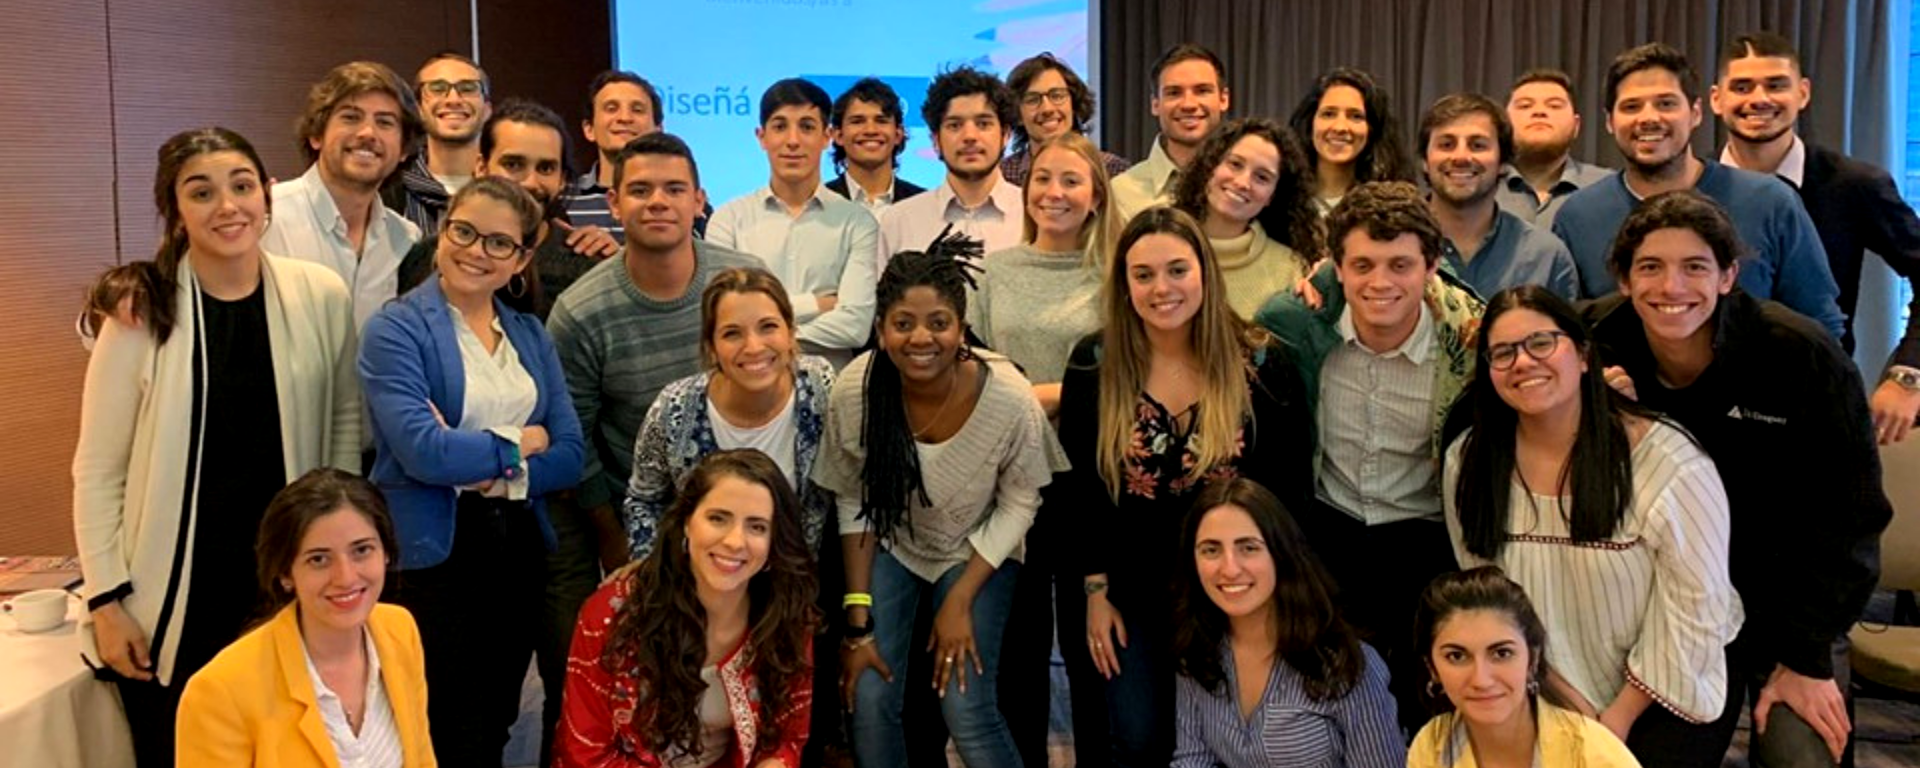 Estudiantes de la UM junto a otros participantes del programa “Iniciativa por los Jóvenes” en Montevideo